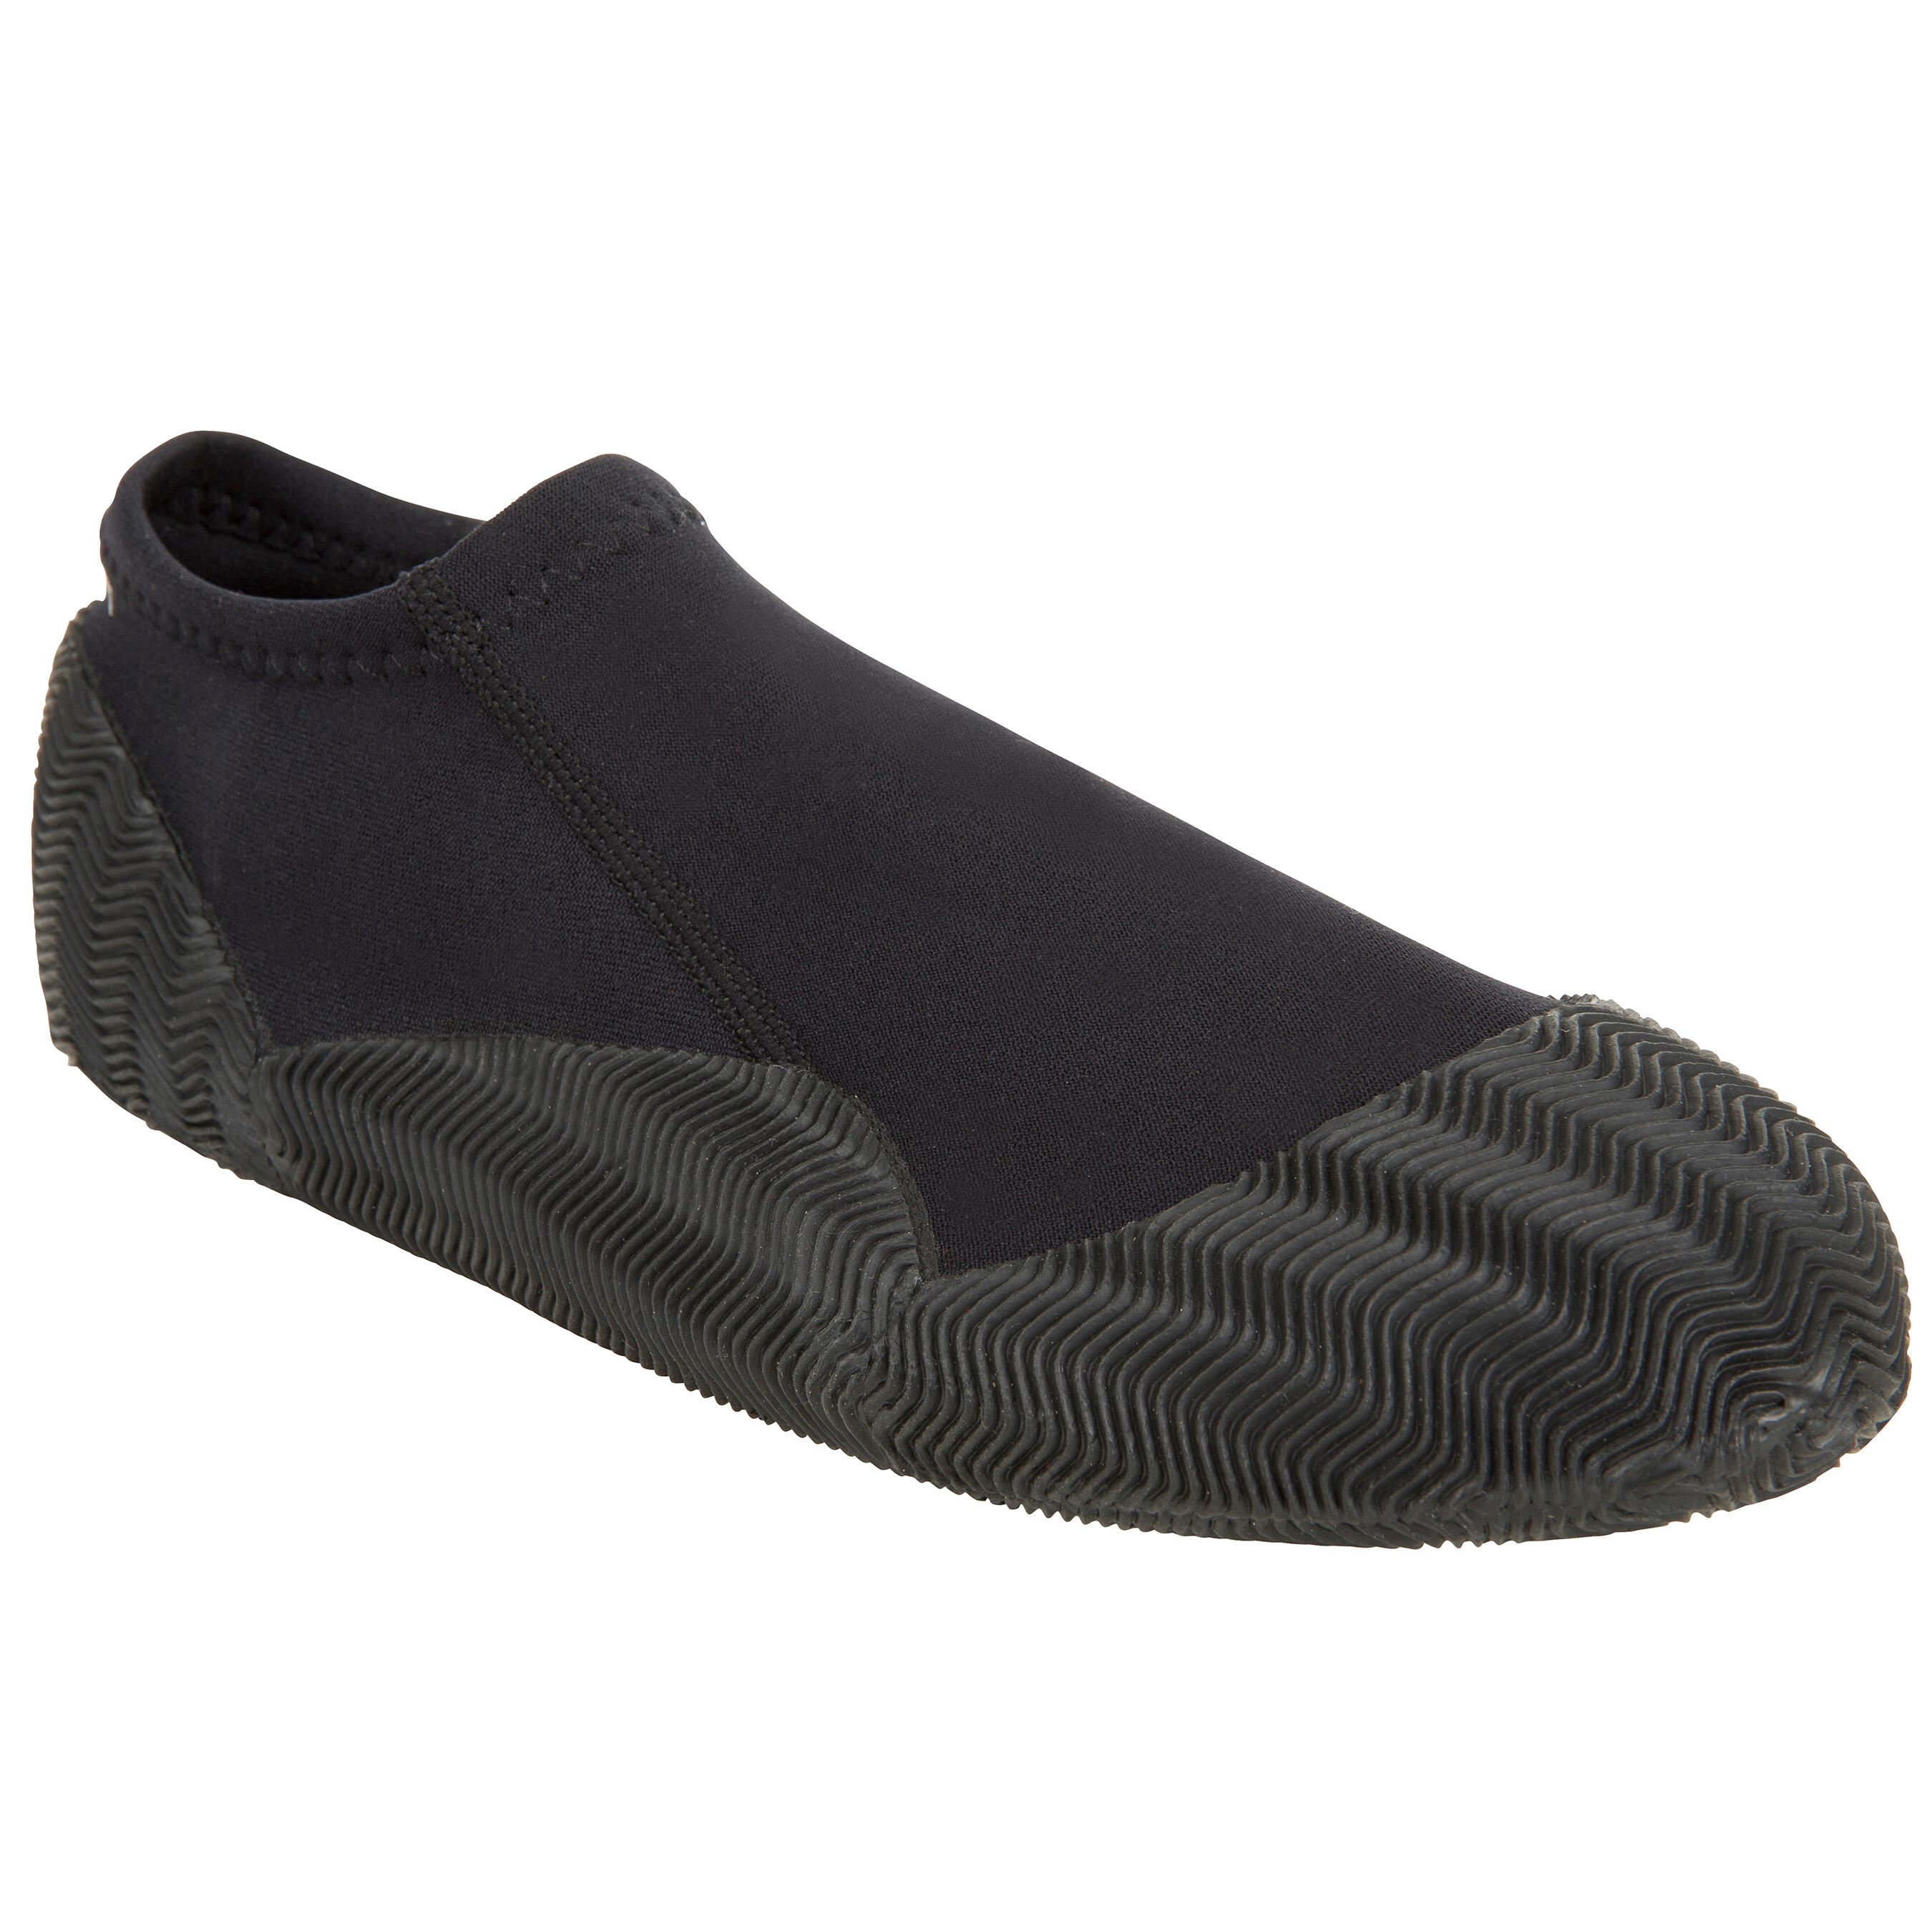 decathlon wetsuit shoes